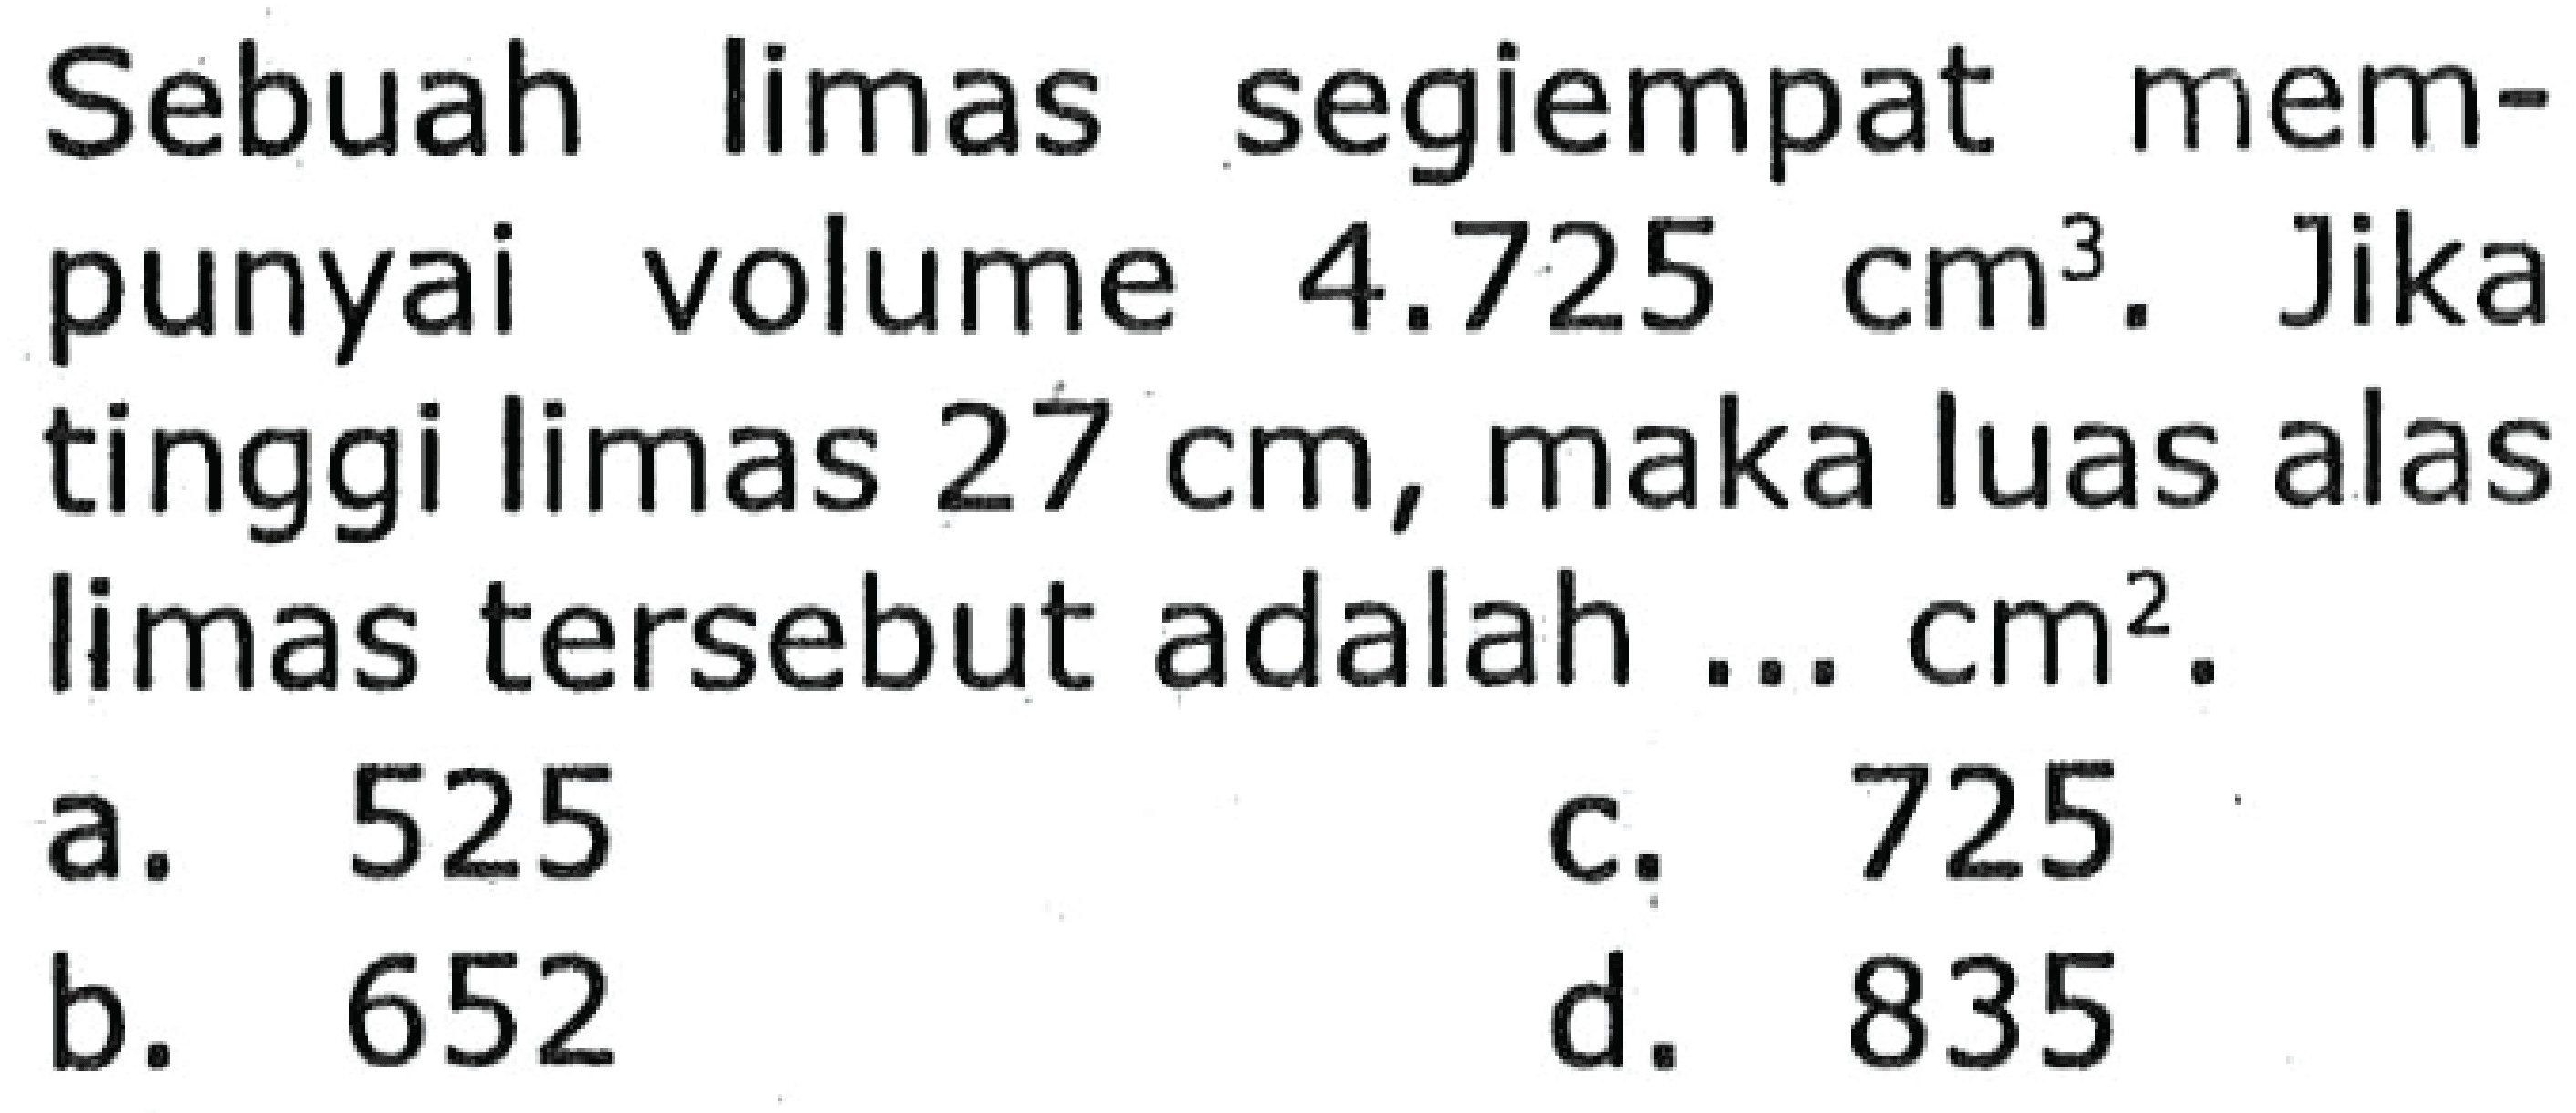 Sebuah limas segiempat mempunyai volume  4.725 cm^3 . Jika tinggi limas  27 cm , maka luas alas limas tersebut adalah ...  cm^2 .
a. 525
c. 725
b. 652
d. 835